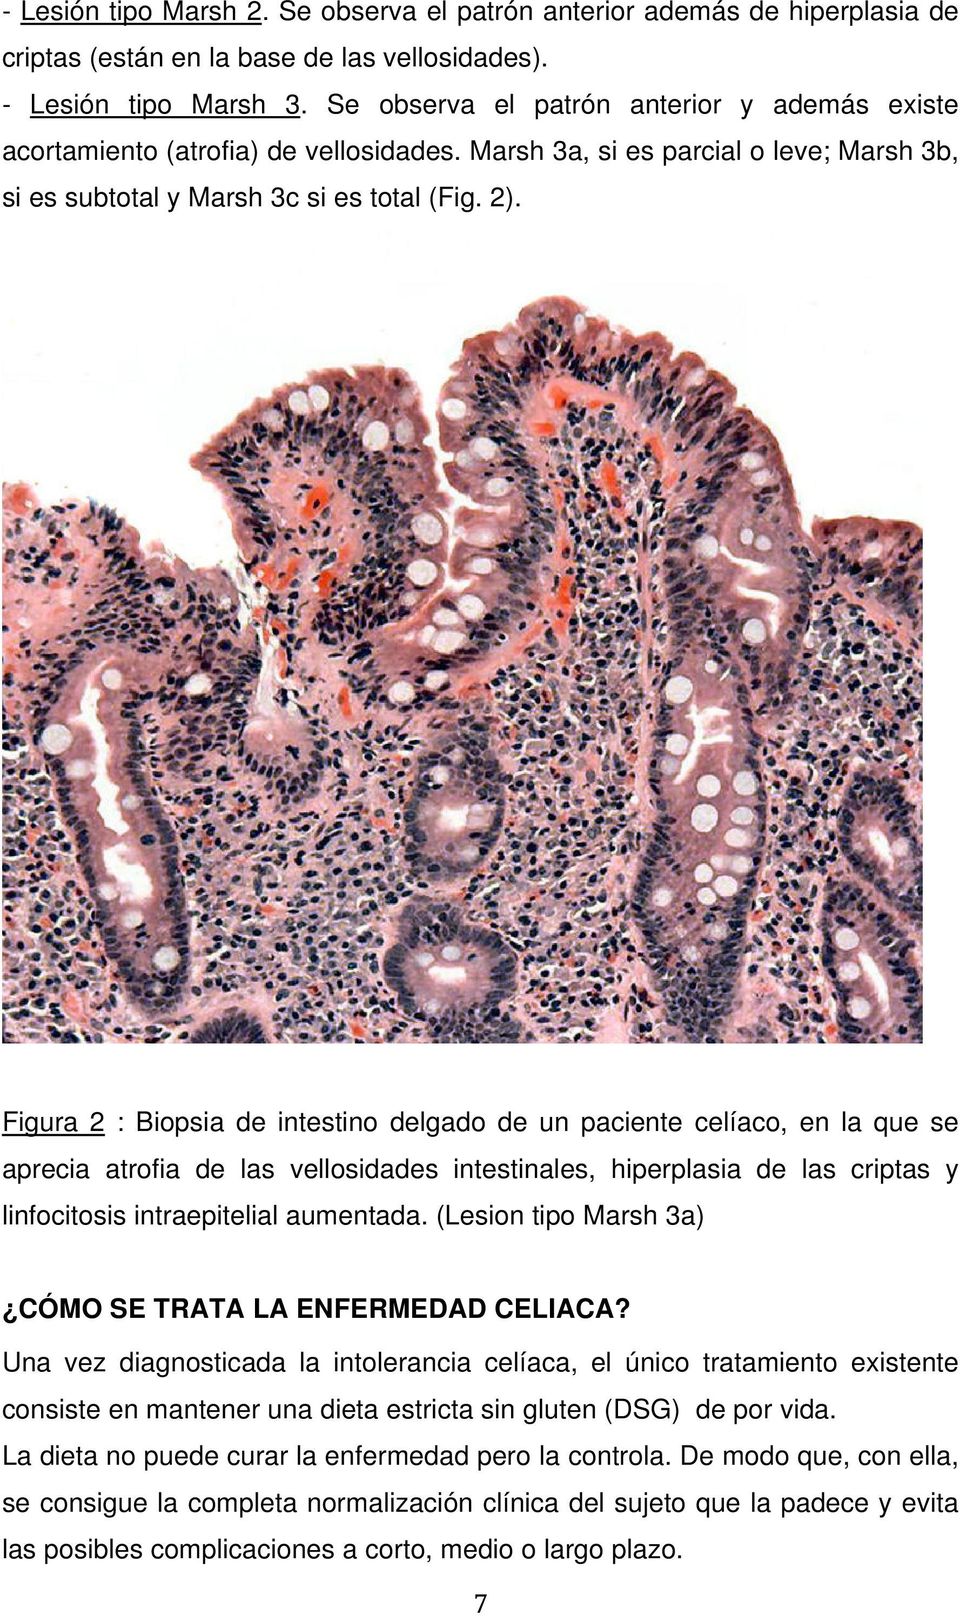 Figura 2 : Biopsia de intestino delgado de un paciente celíaco, en la que se aprecia atrofia de las vellosidades intestinales, hiperplasia de las criptas y linfocitosis intraepitelial aumentada.